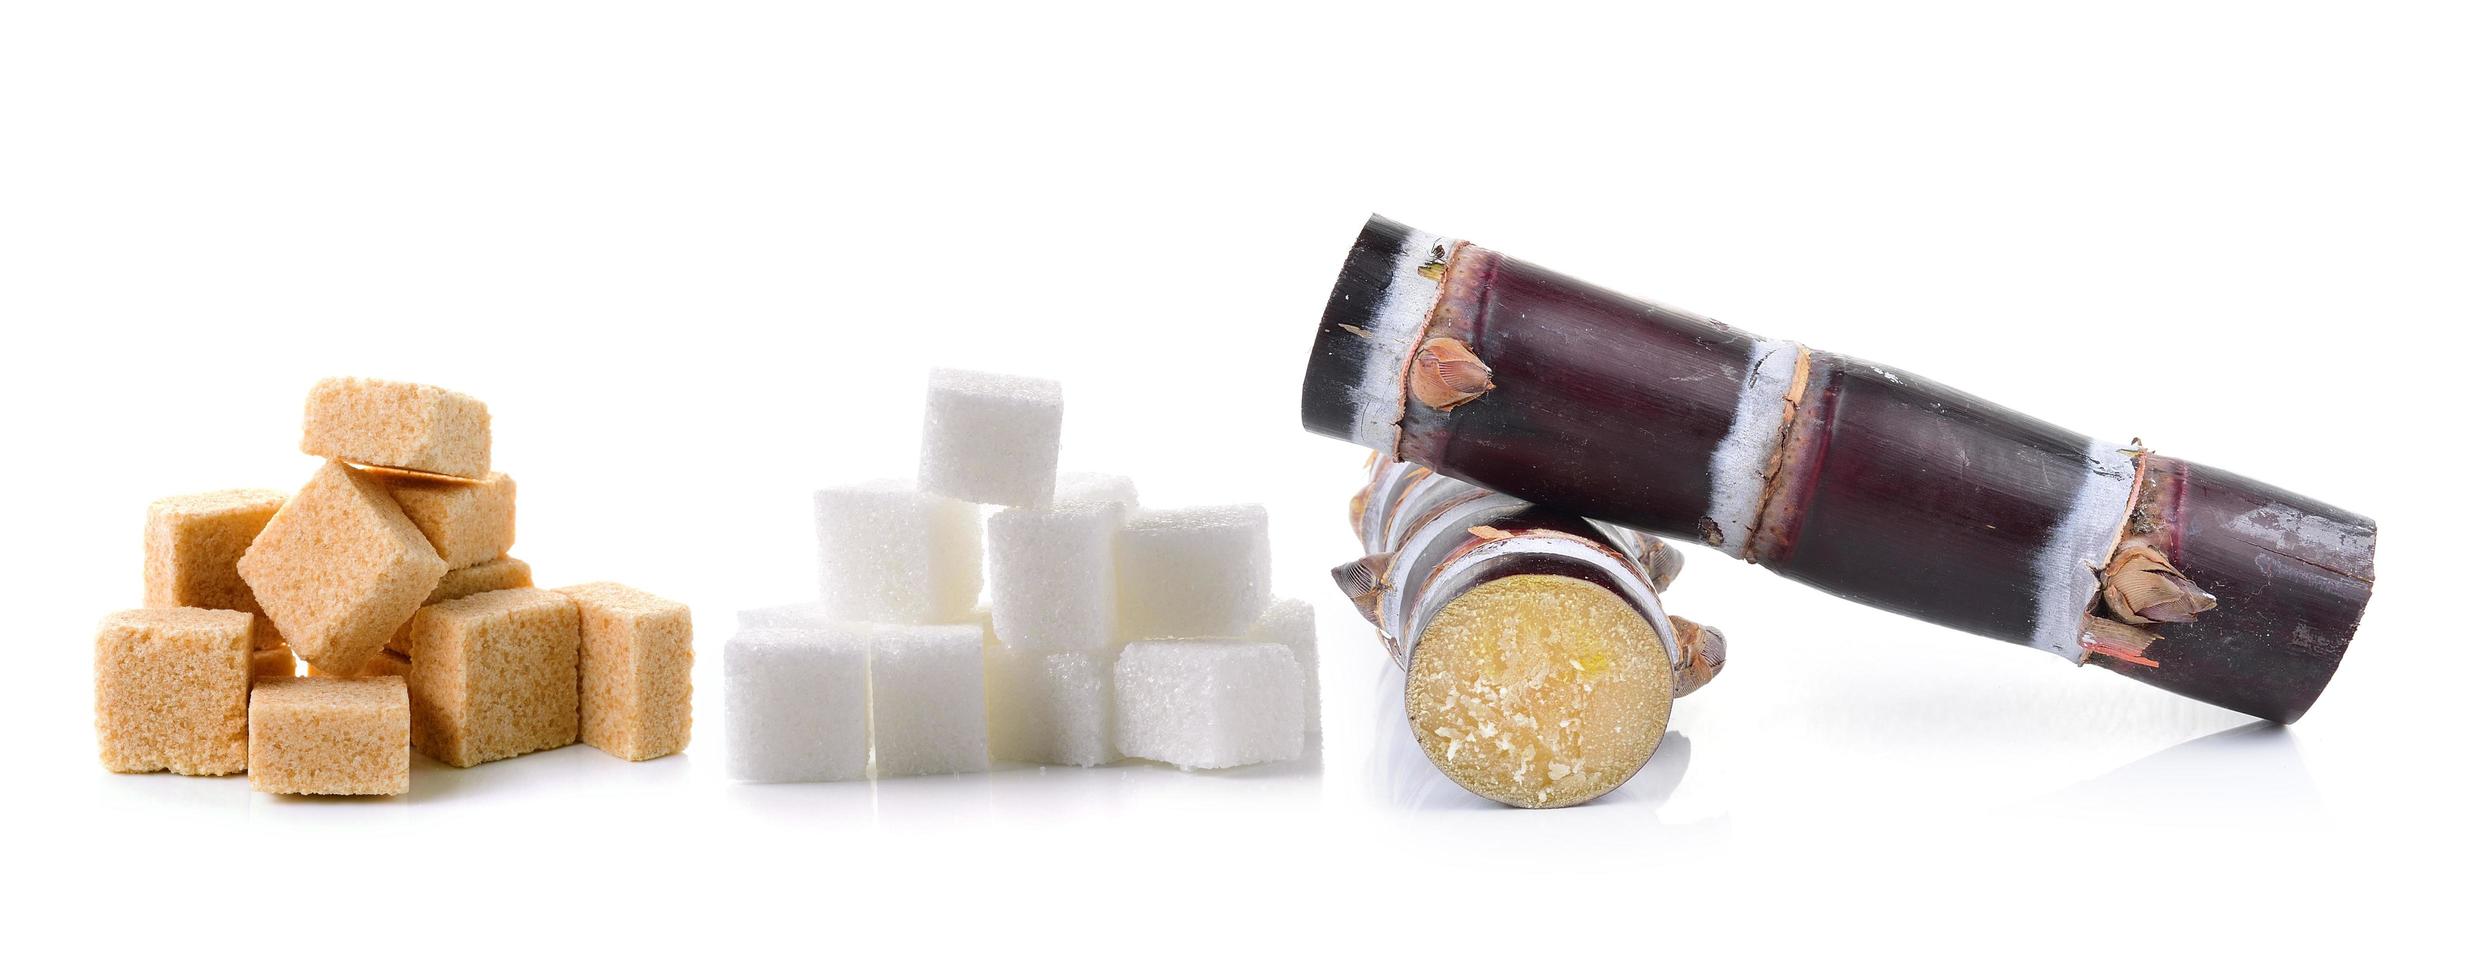 sockerrör och sockerkub på vit bakgrund foto